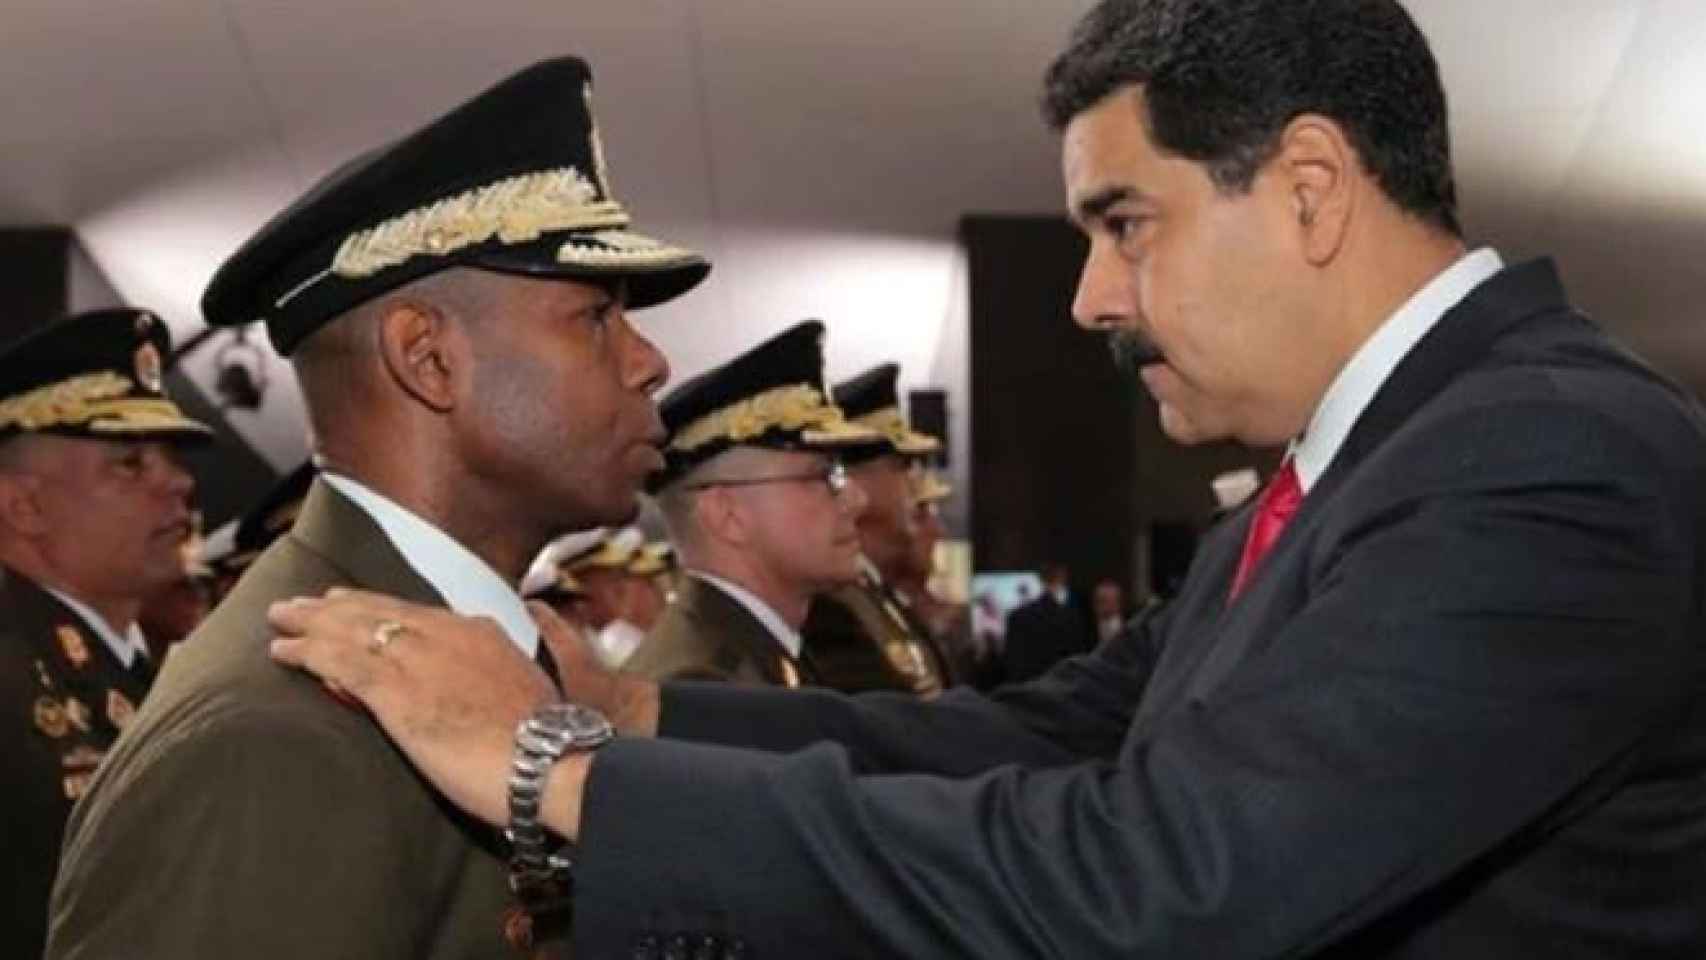 Figuera con Maduro en una imagen de archivo